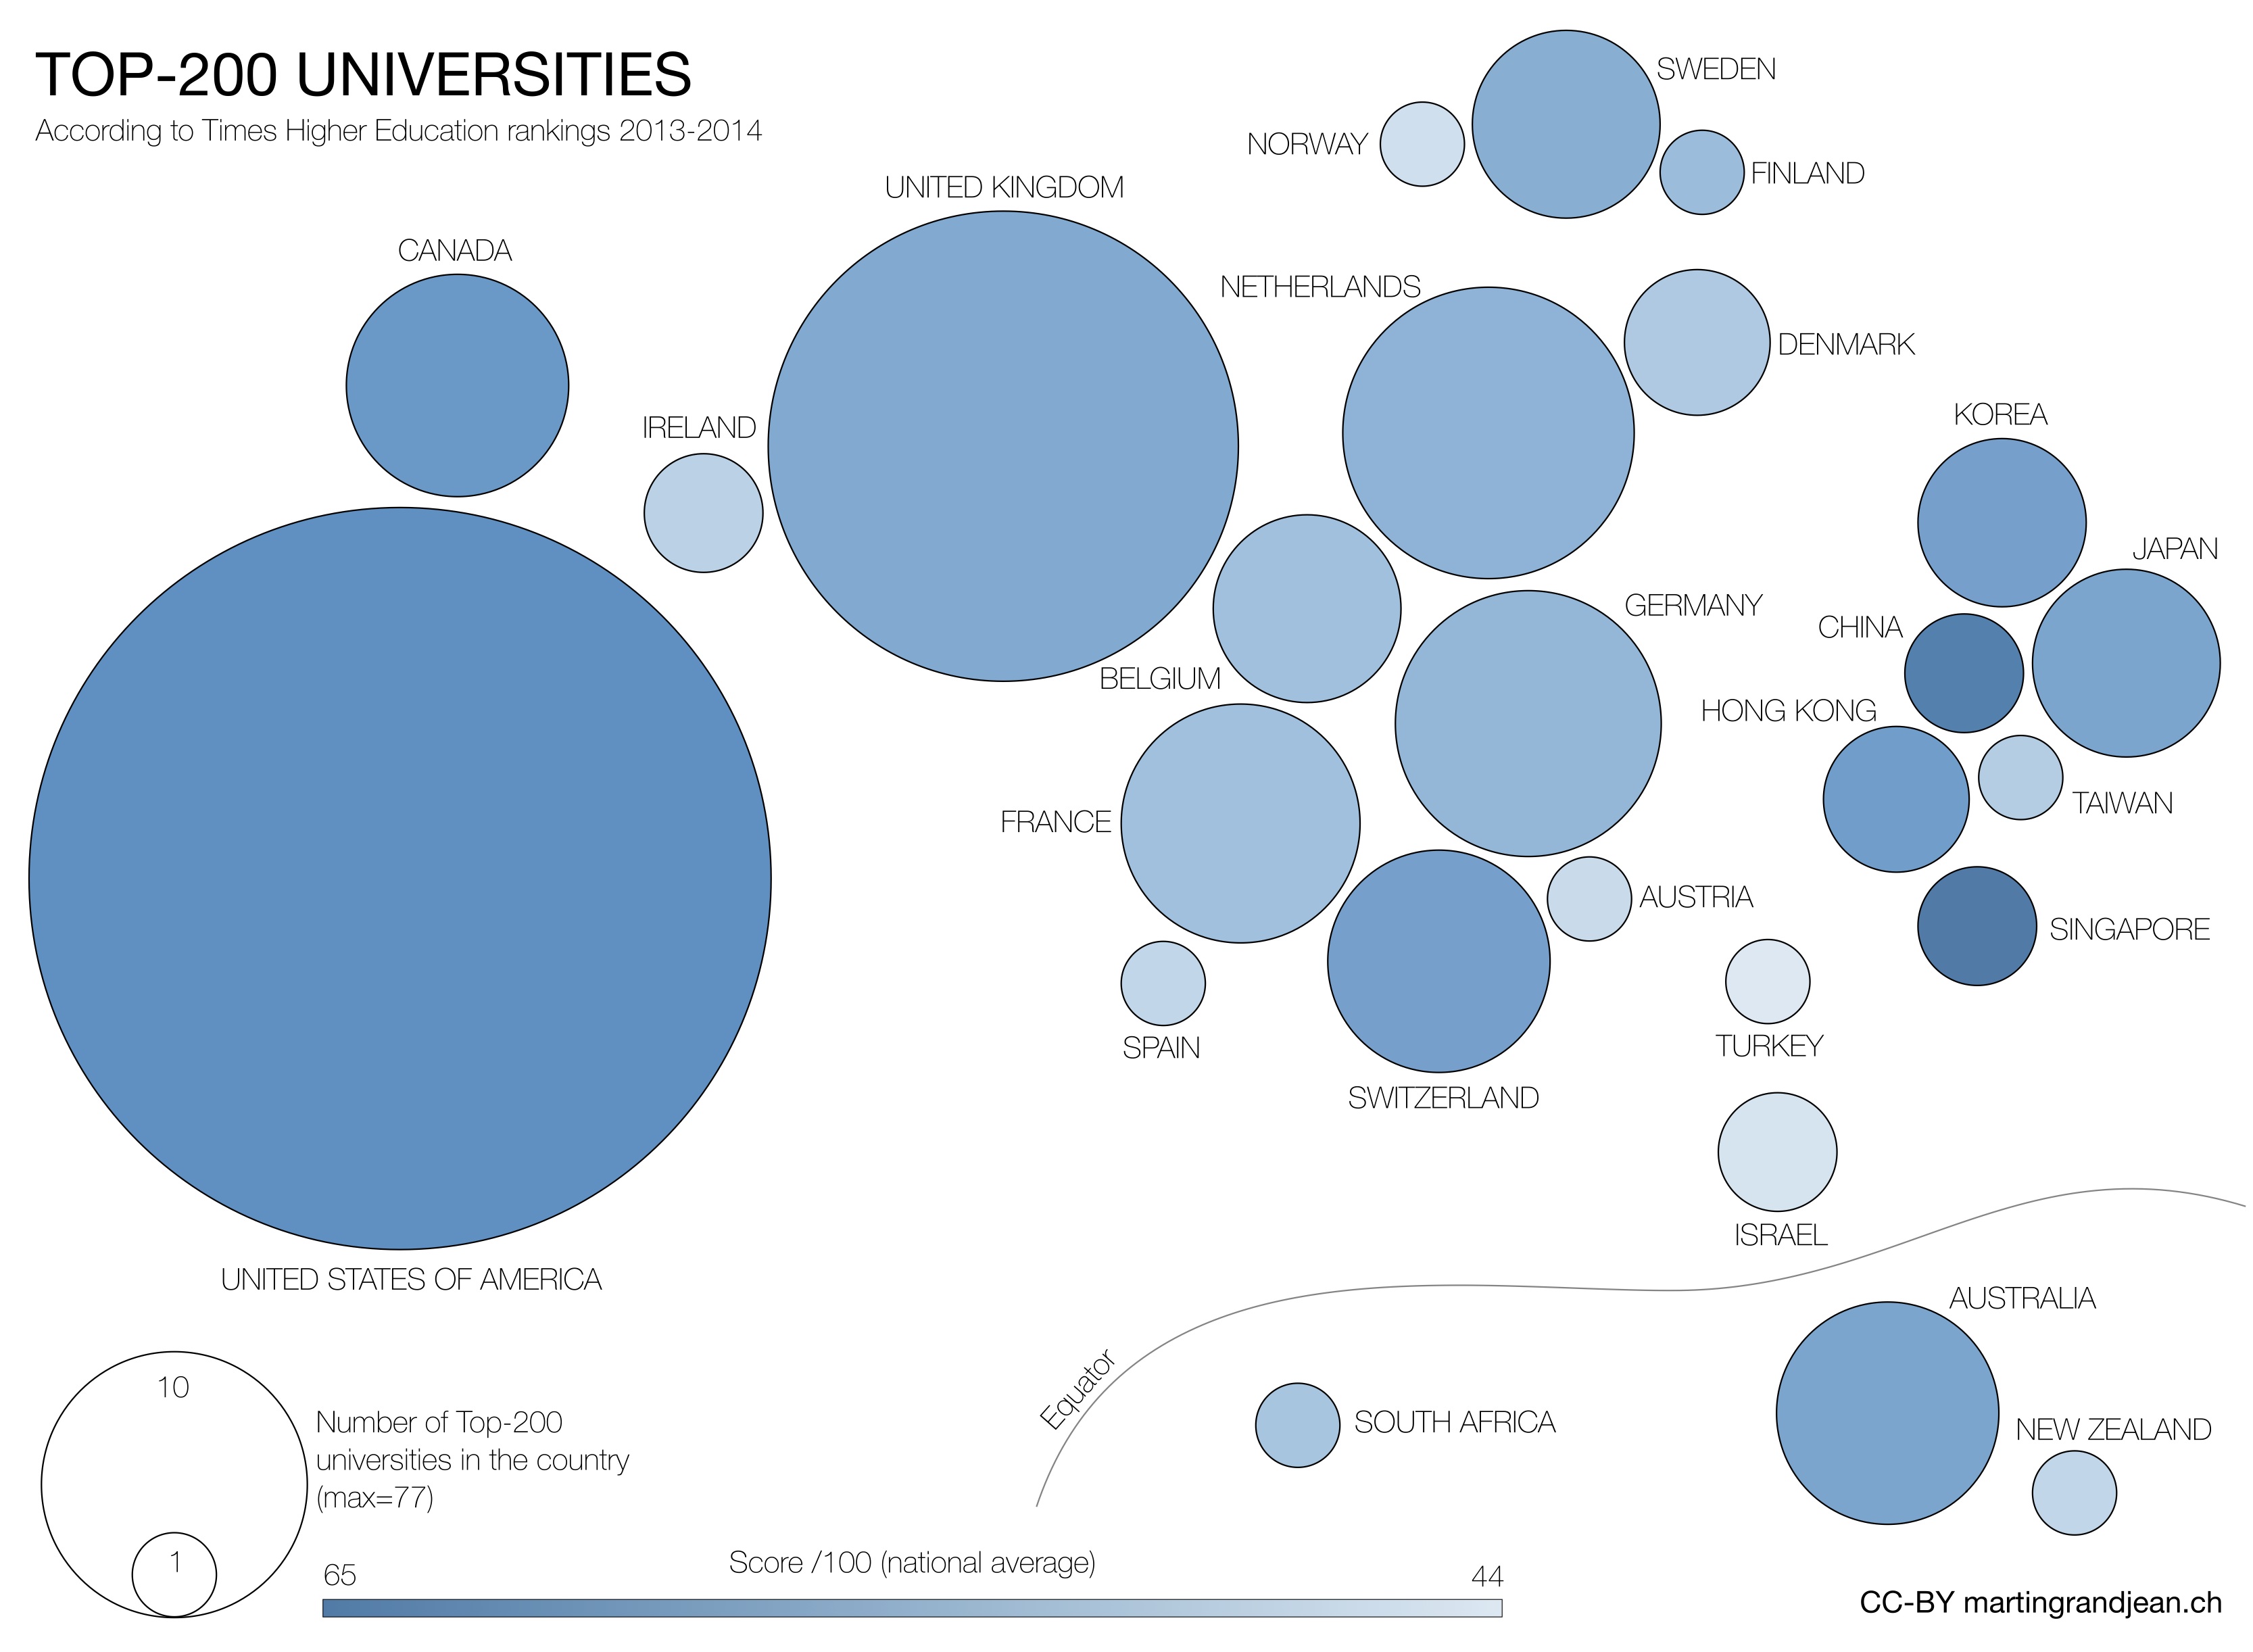 Top-200 Universities 2013-2014